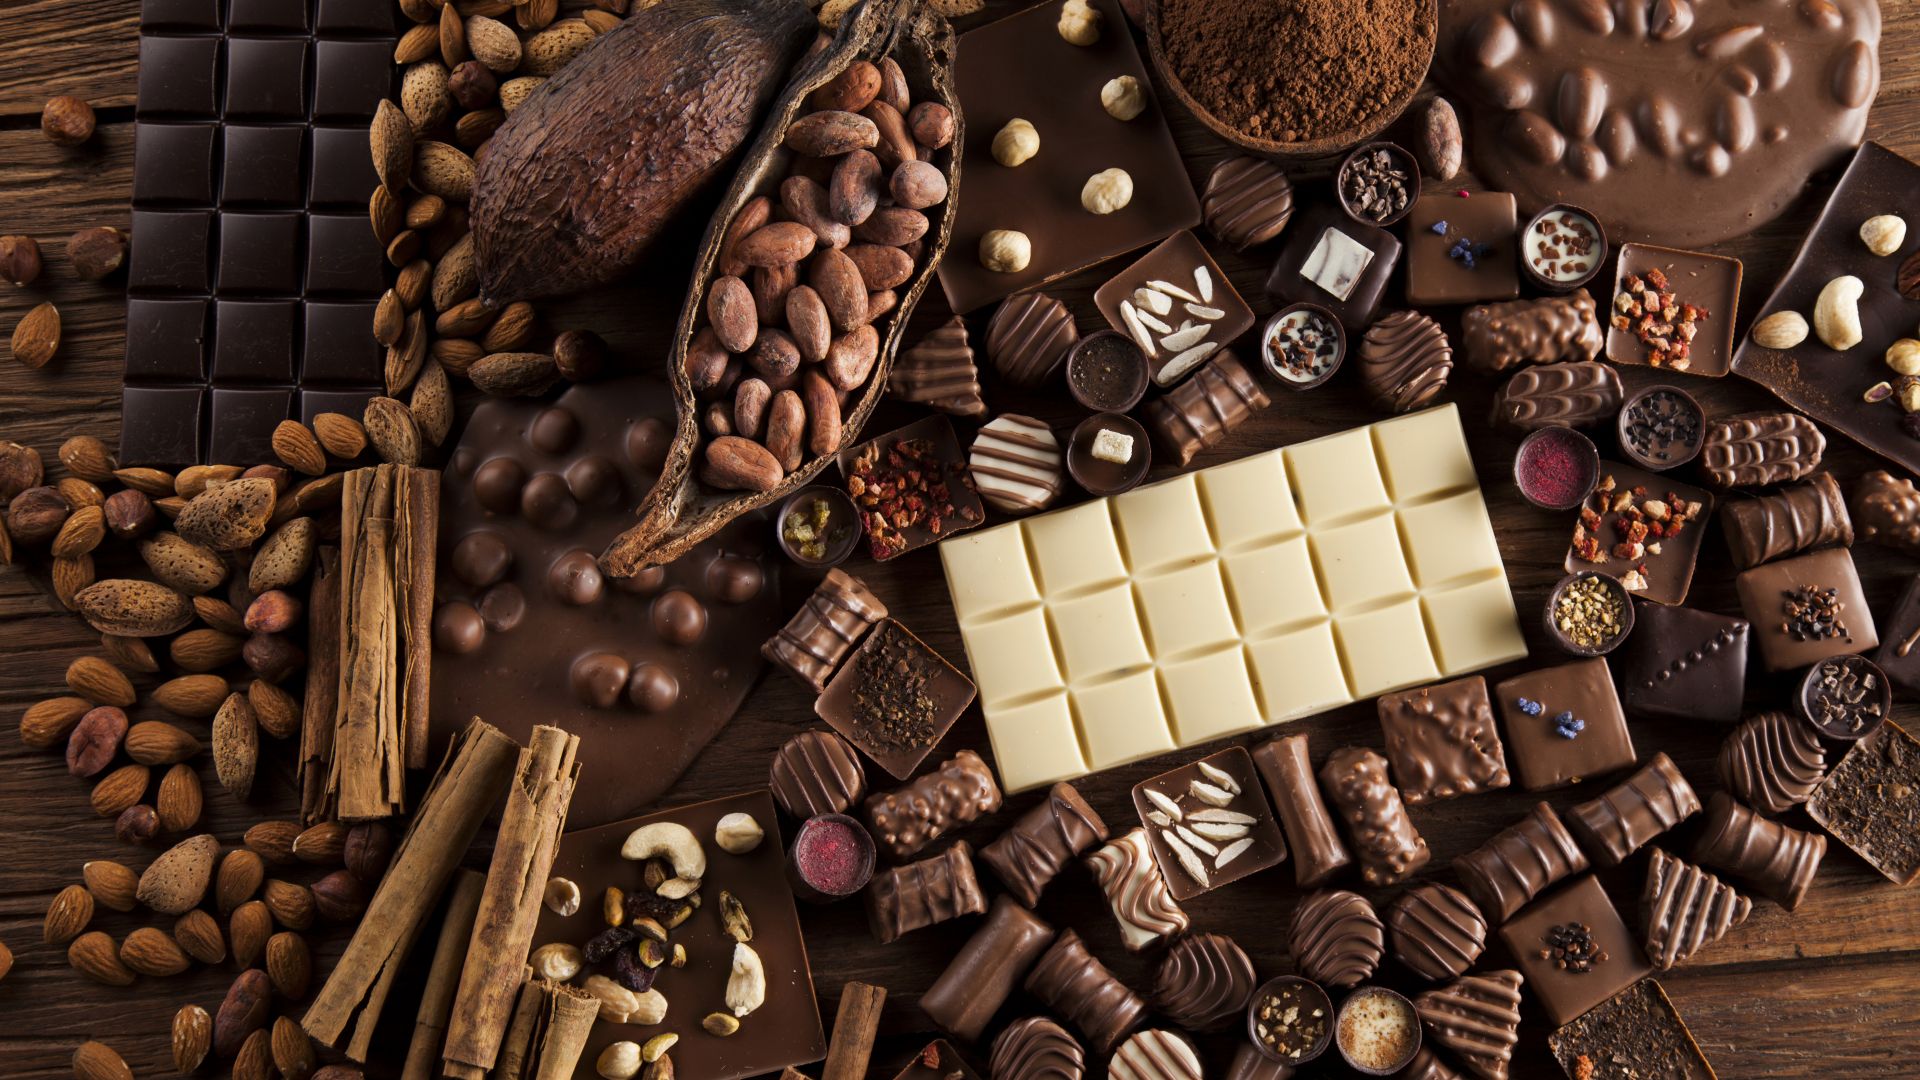 cioccolato wallpaper hd,cioccolato,barretta di cioccolato,dolcezza,cibo,confetteria